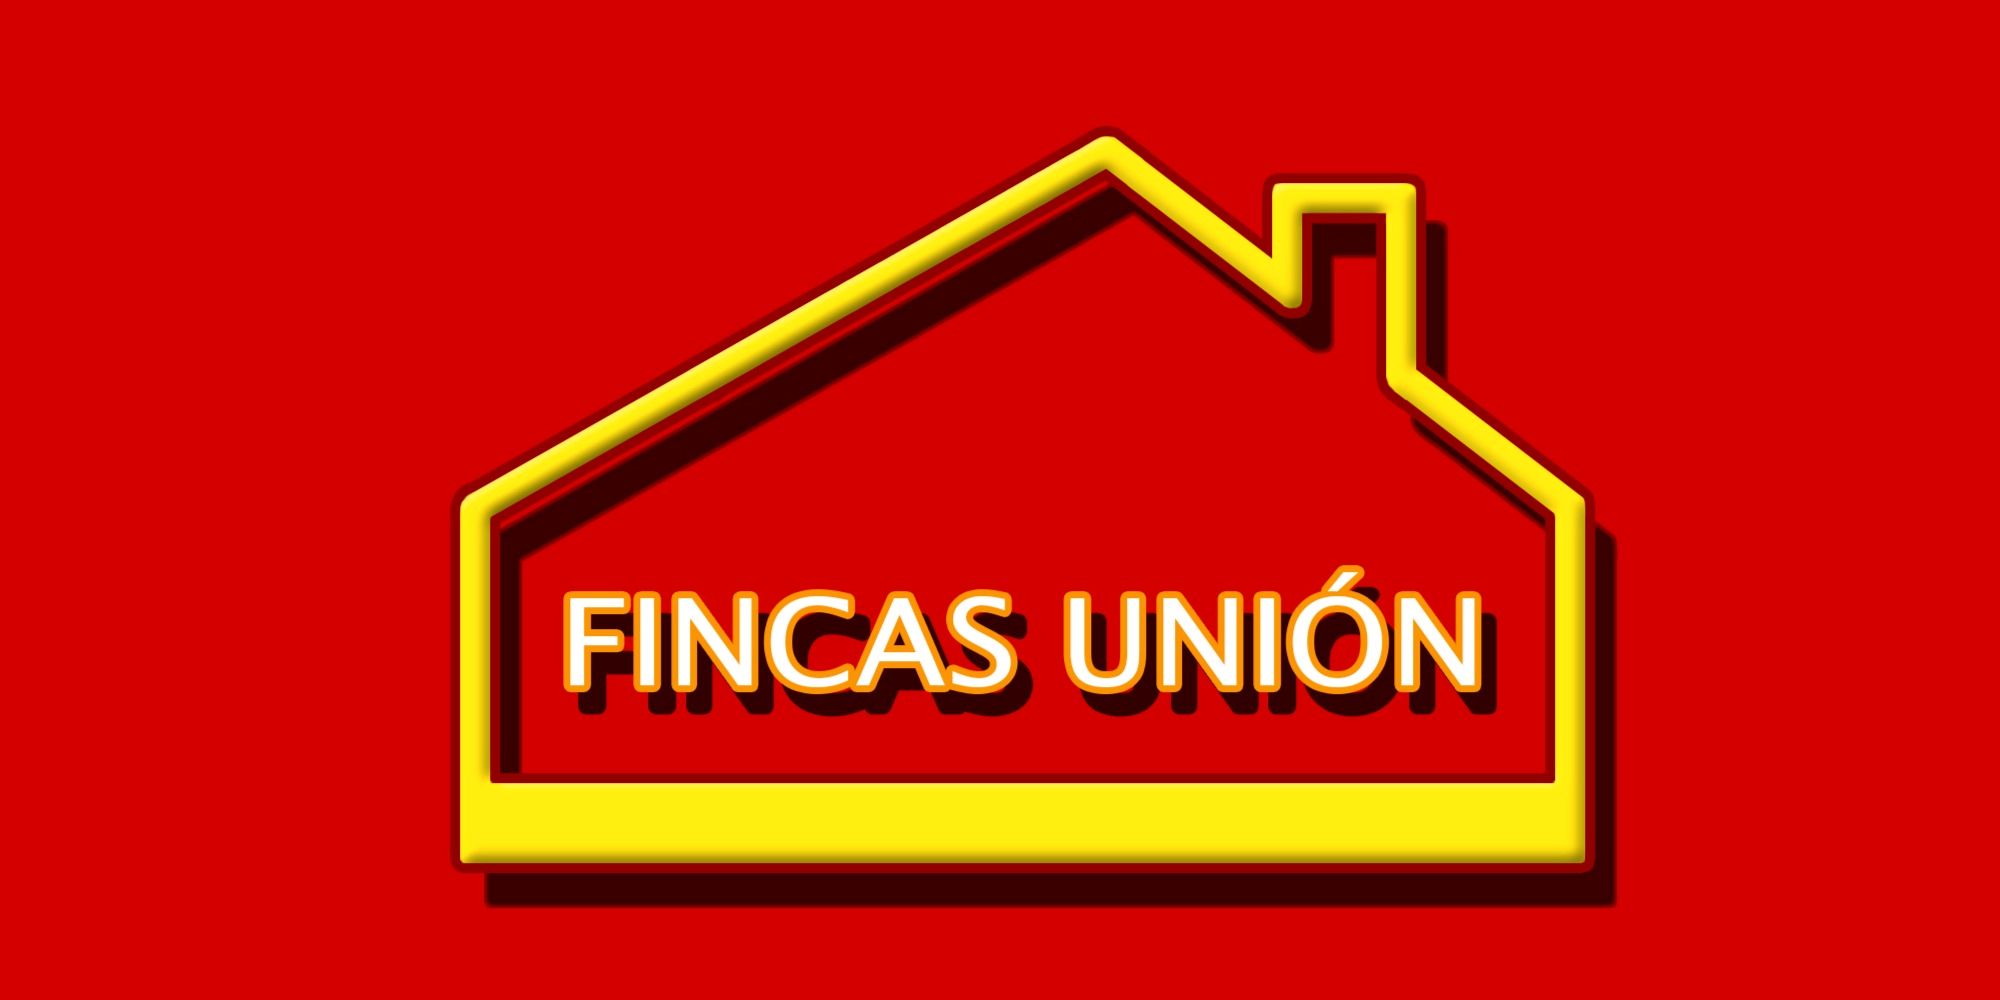 FINCAS UNION